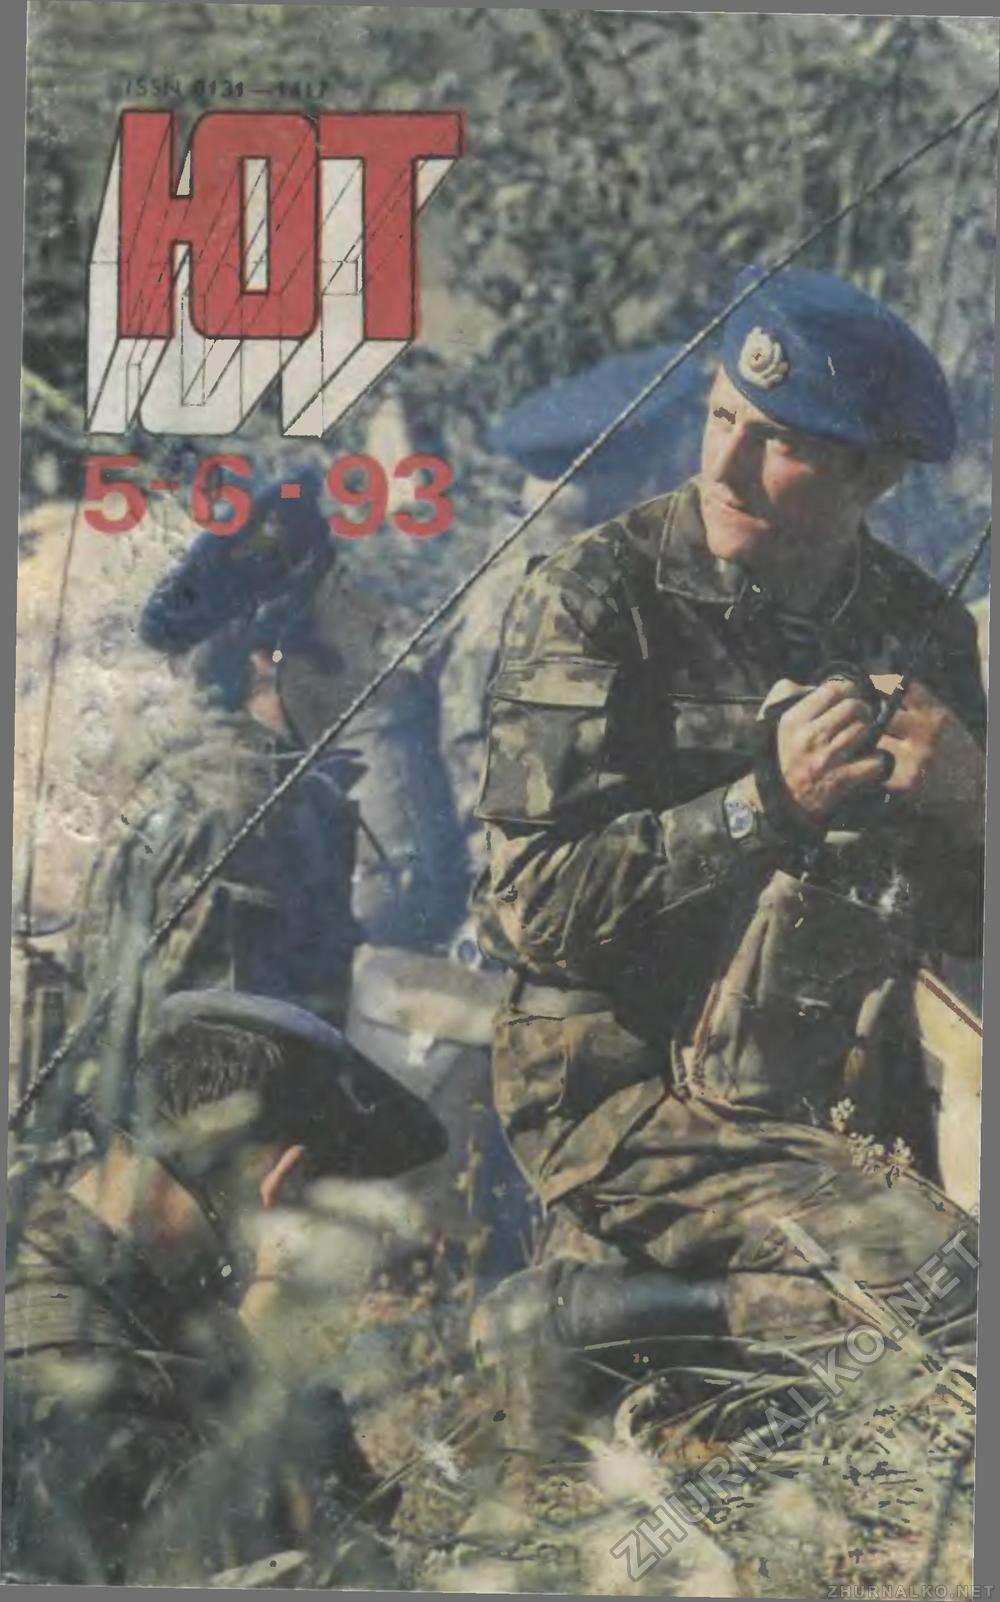   1993-05-06,  1